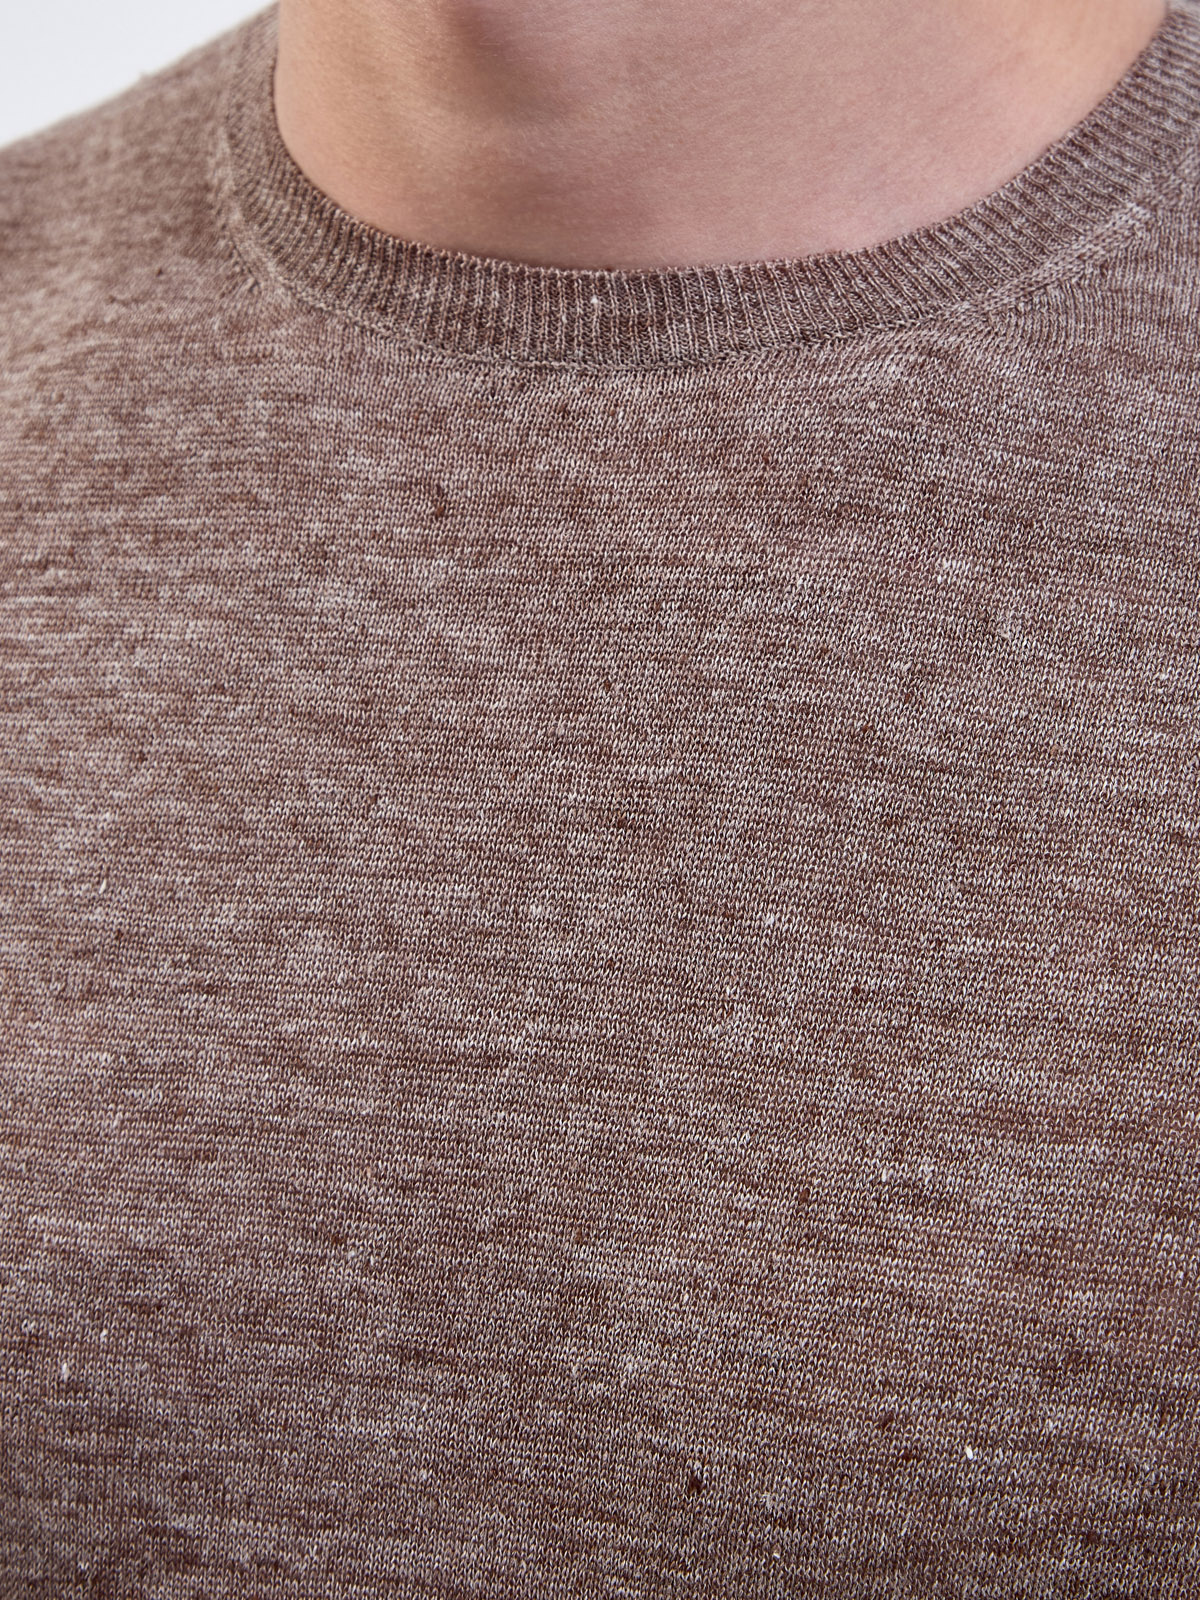 Джемпер из меланжевого льна с отделкой английской вязки GRAN SASSO, цвет коричневый, размер 48;50;56 - фото 5